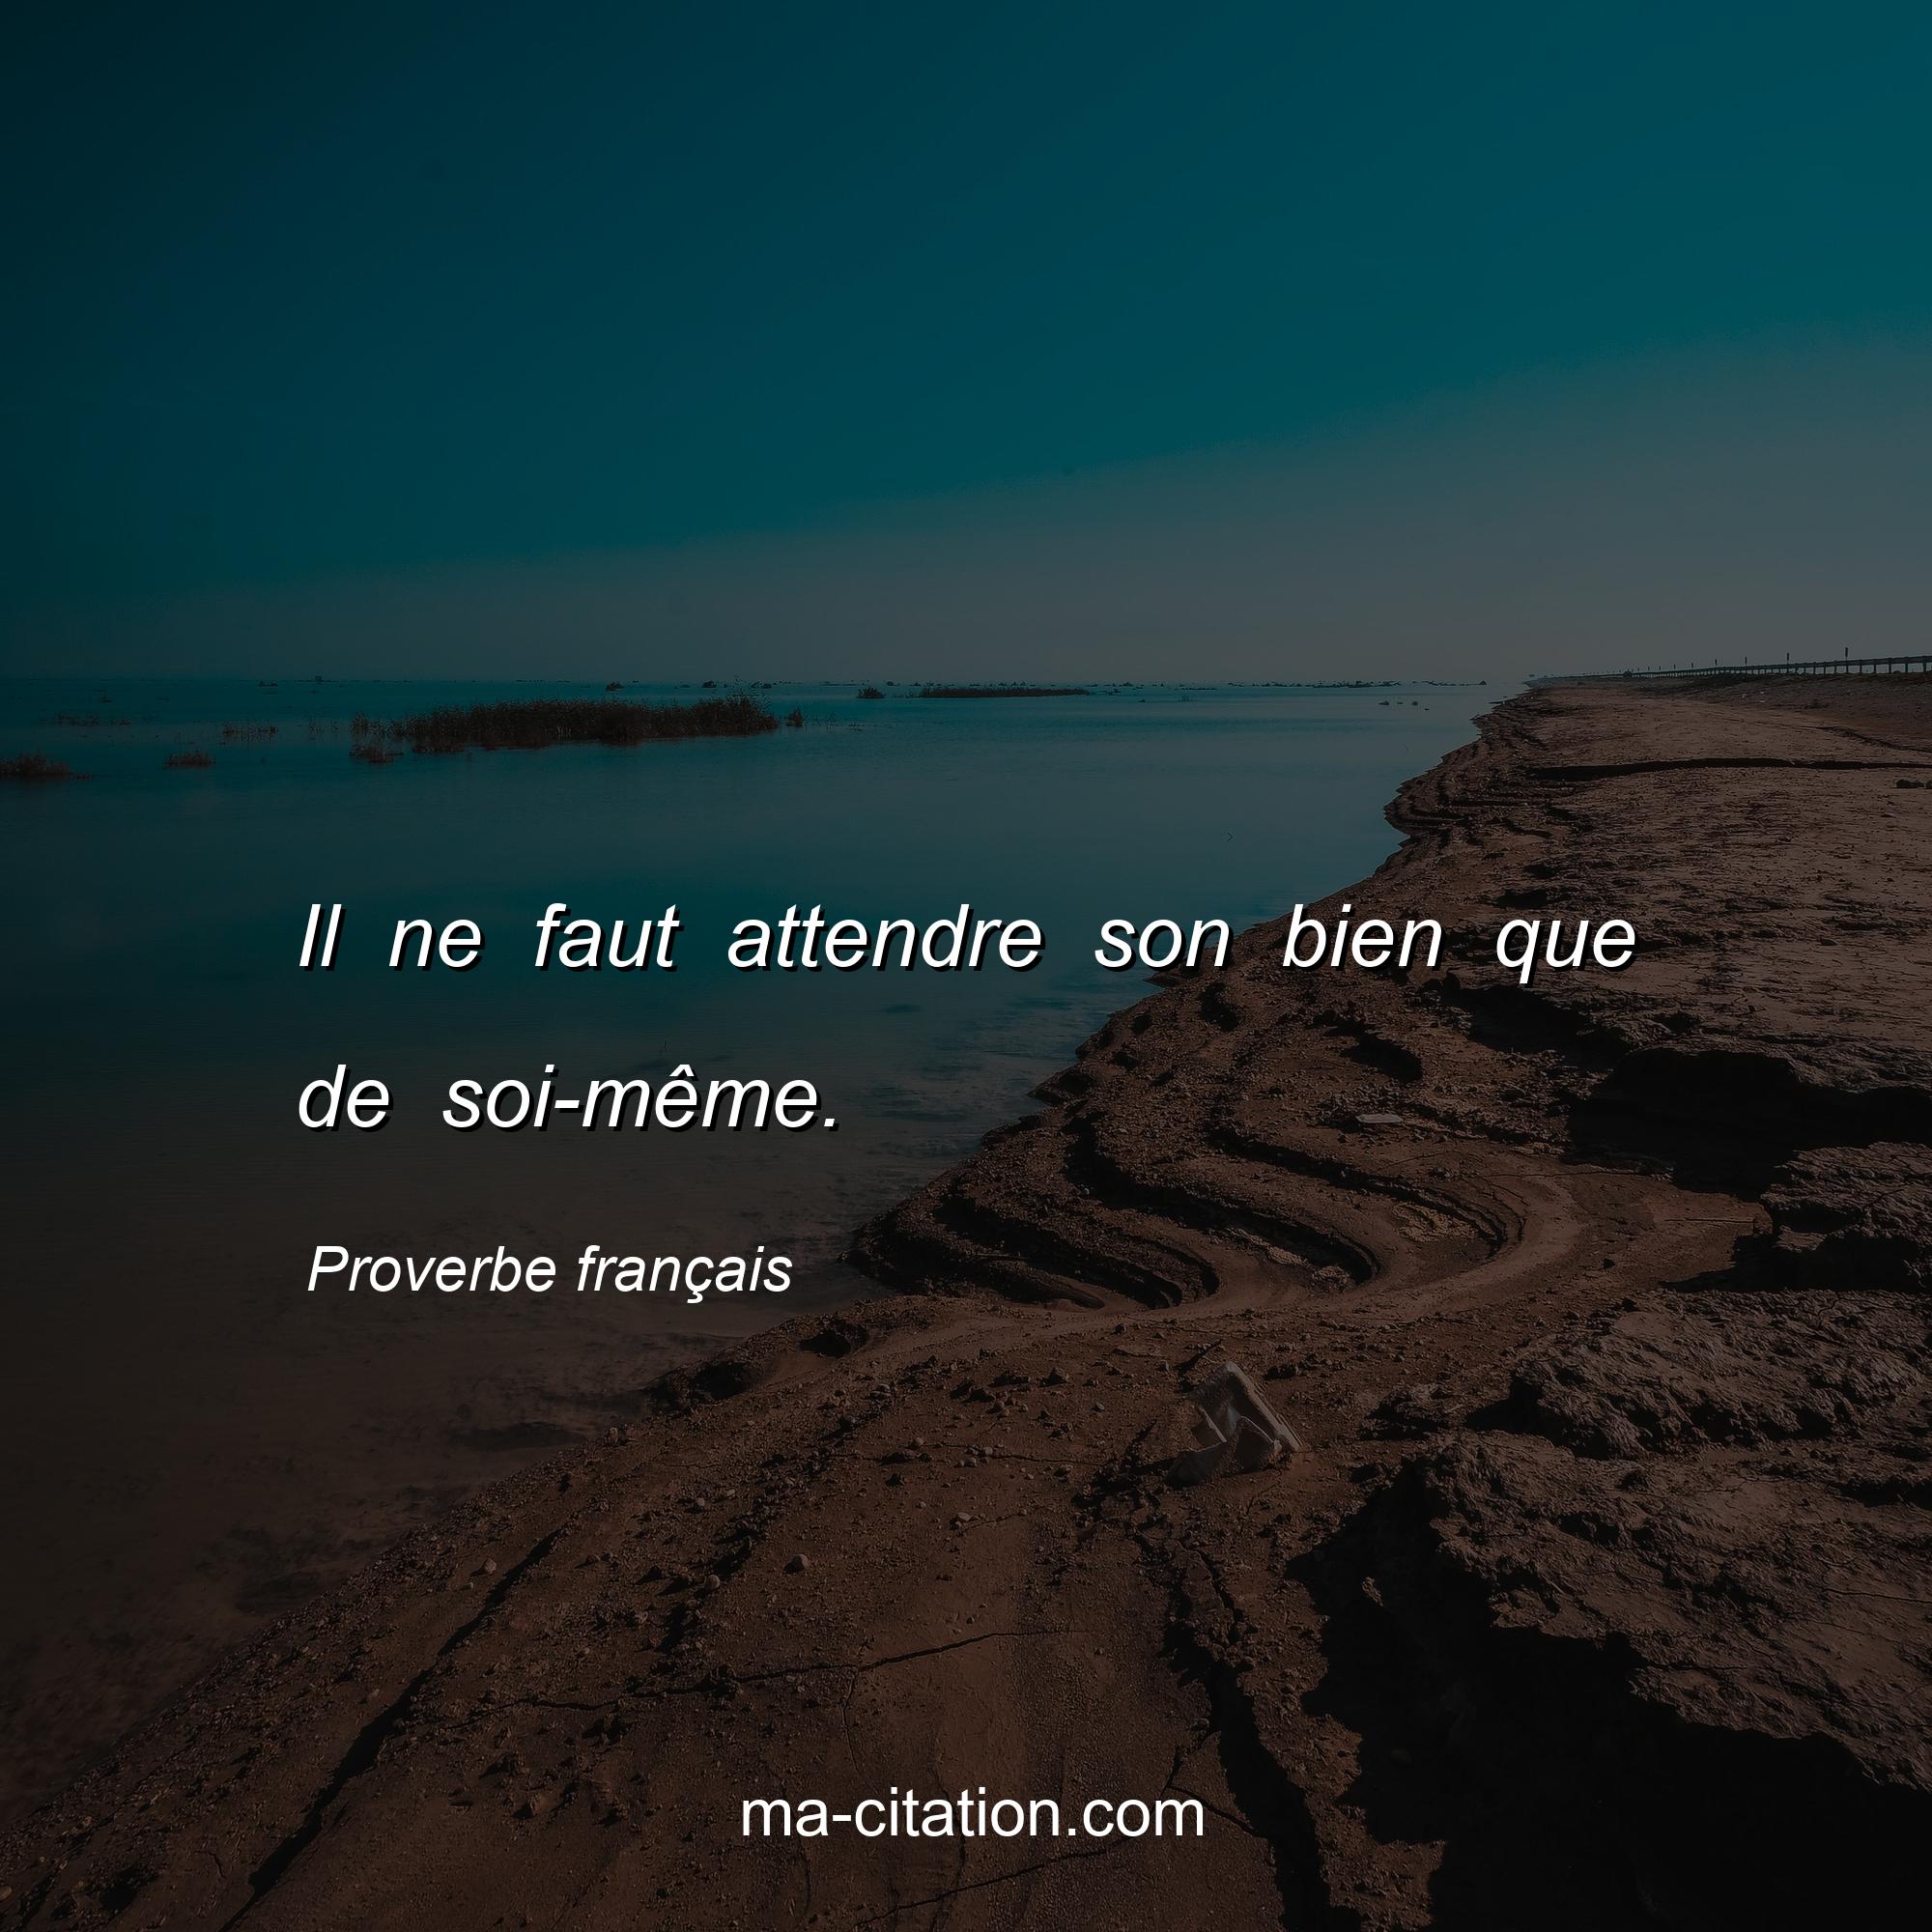 Proverbe français : Il ne faut attendre son bien que de soi-même.